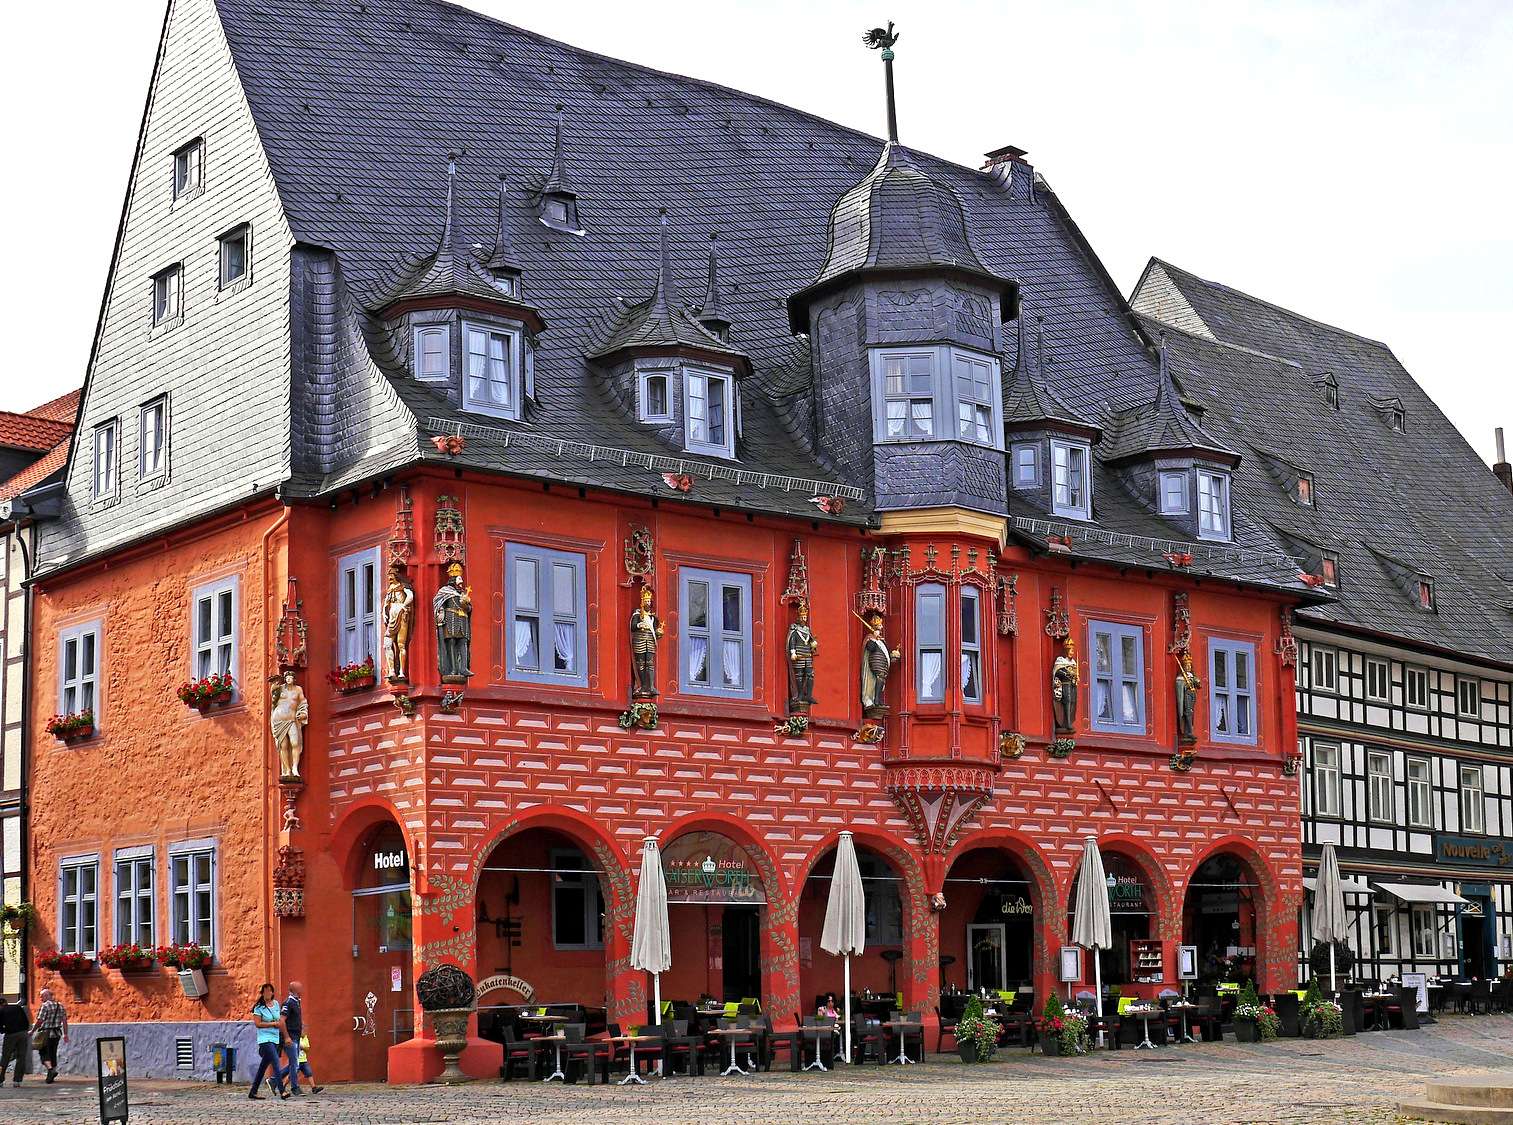 Hotel Kaiserworth na rynku w Goslar puzzle online